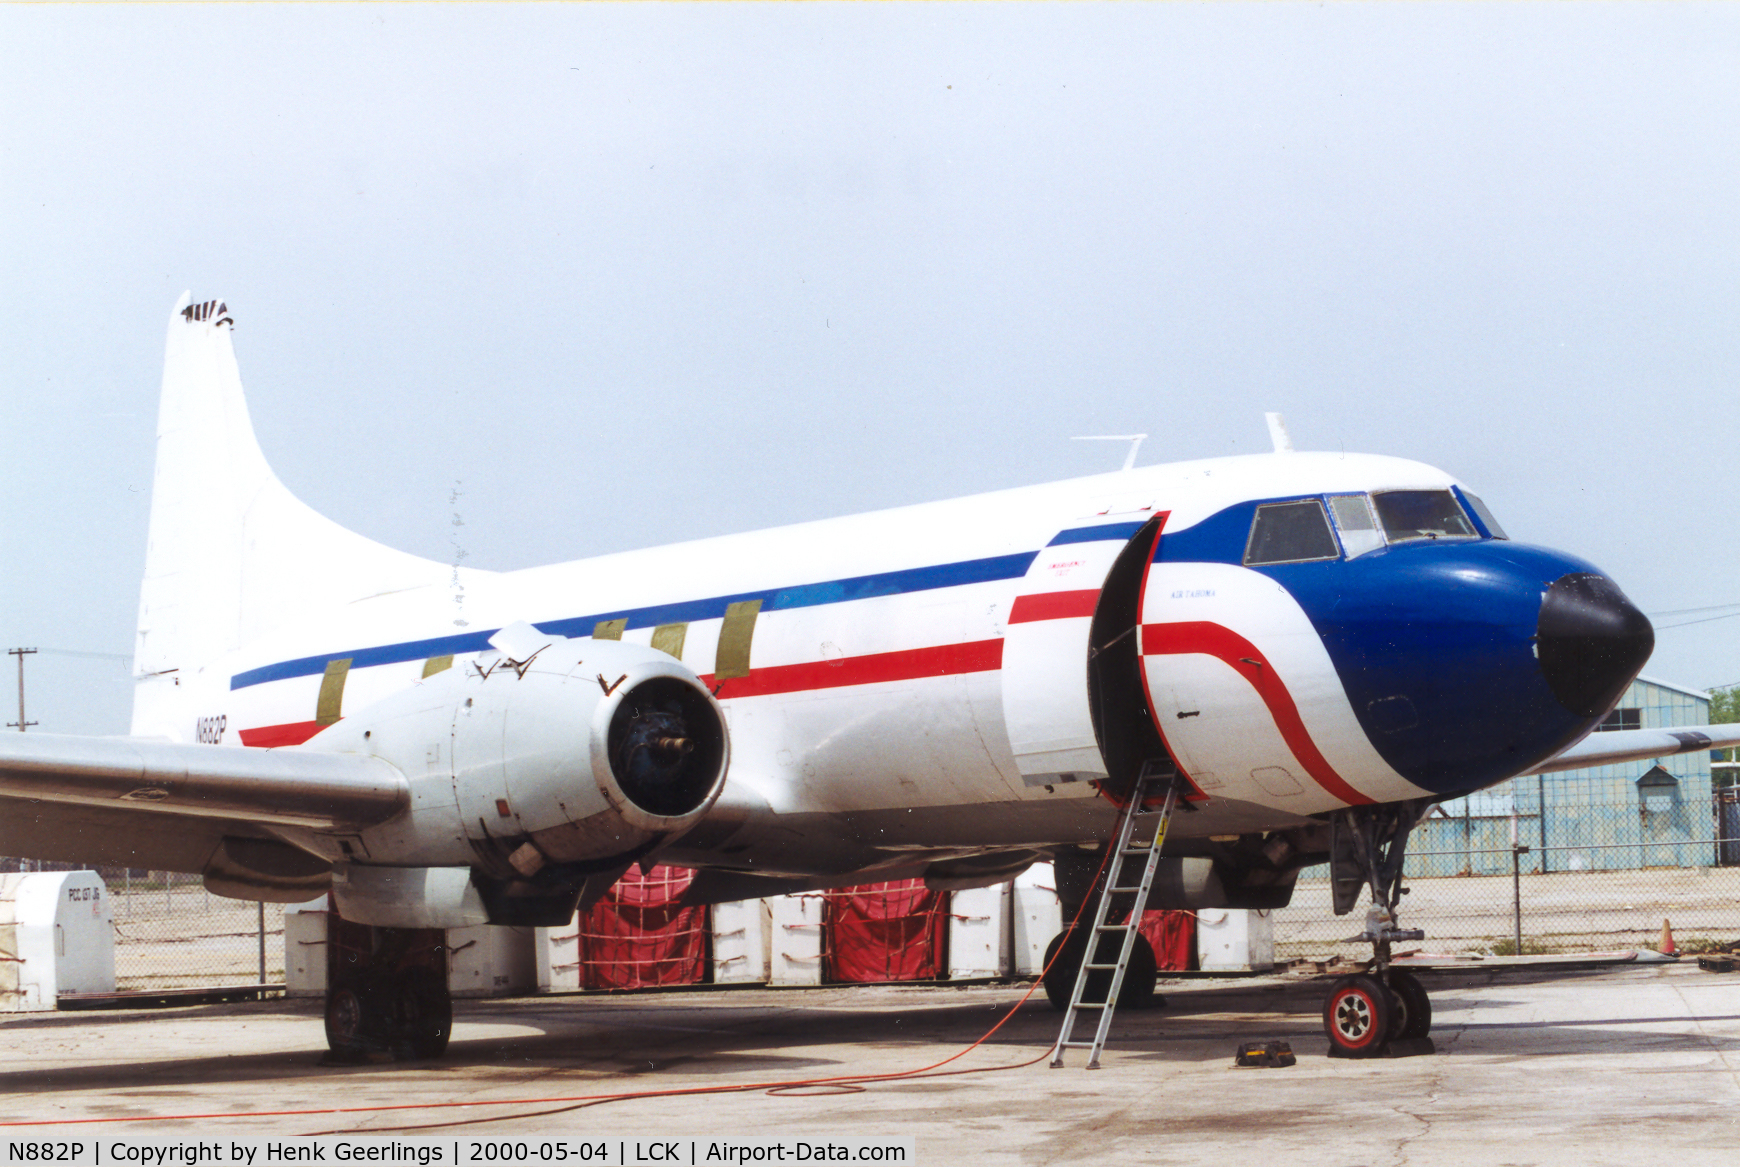 N882P, Convair 240-53 C/N 5323, Air Tahoma